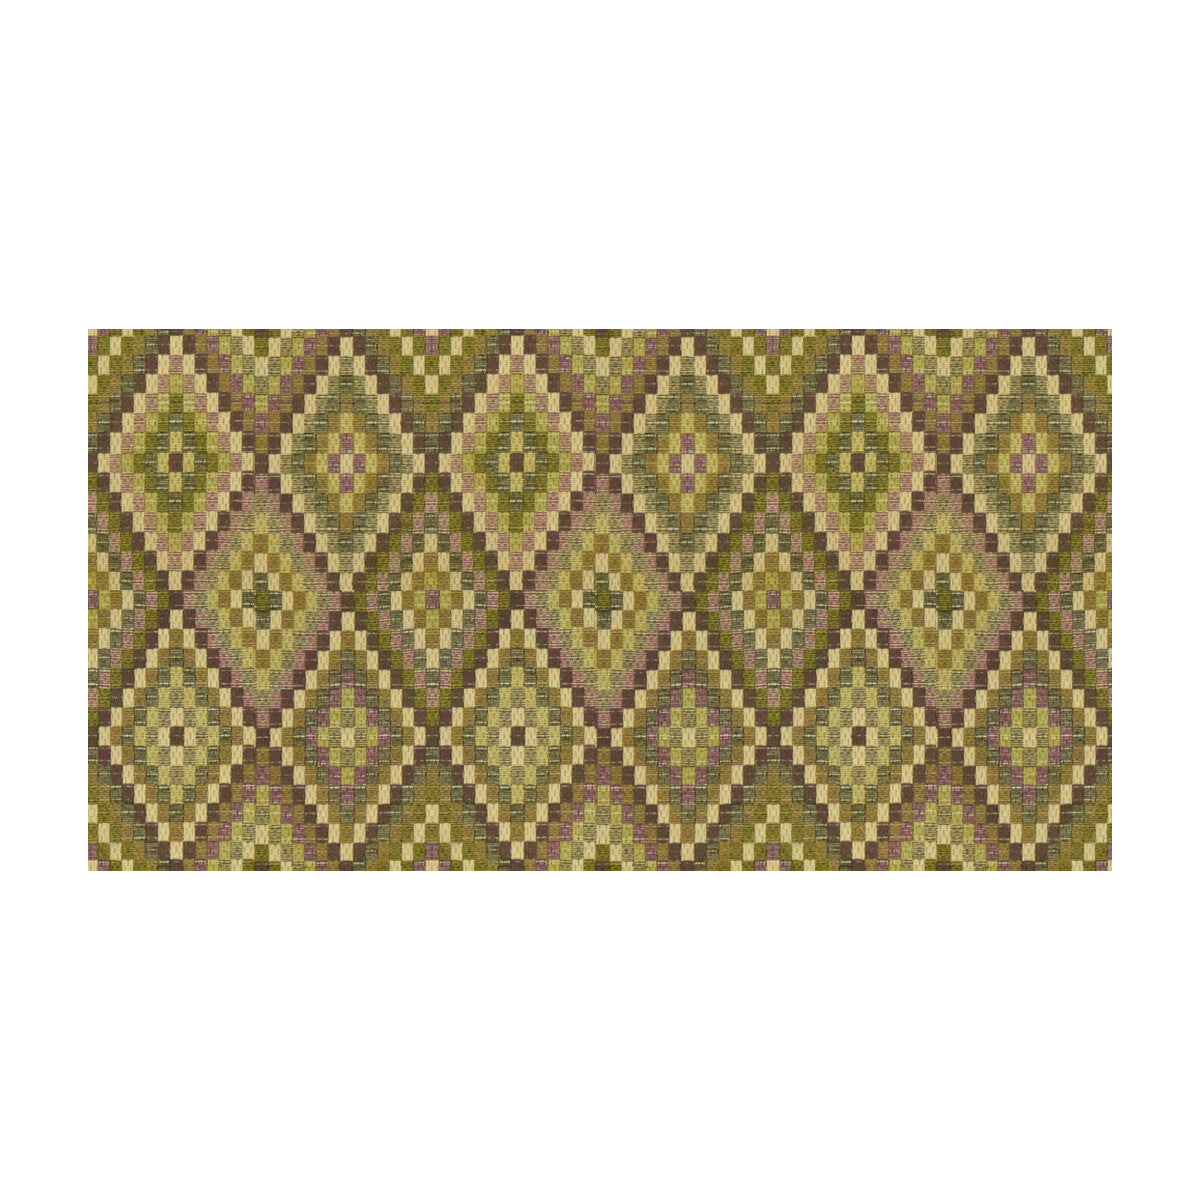 Kravet Design fabric in 33222-310 color - pattern 33222.310.0 - by Kravet Design